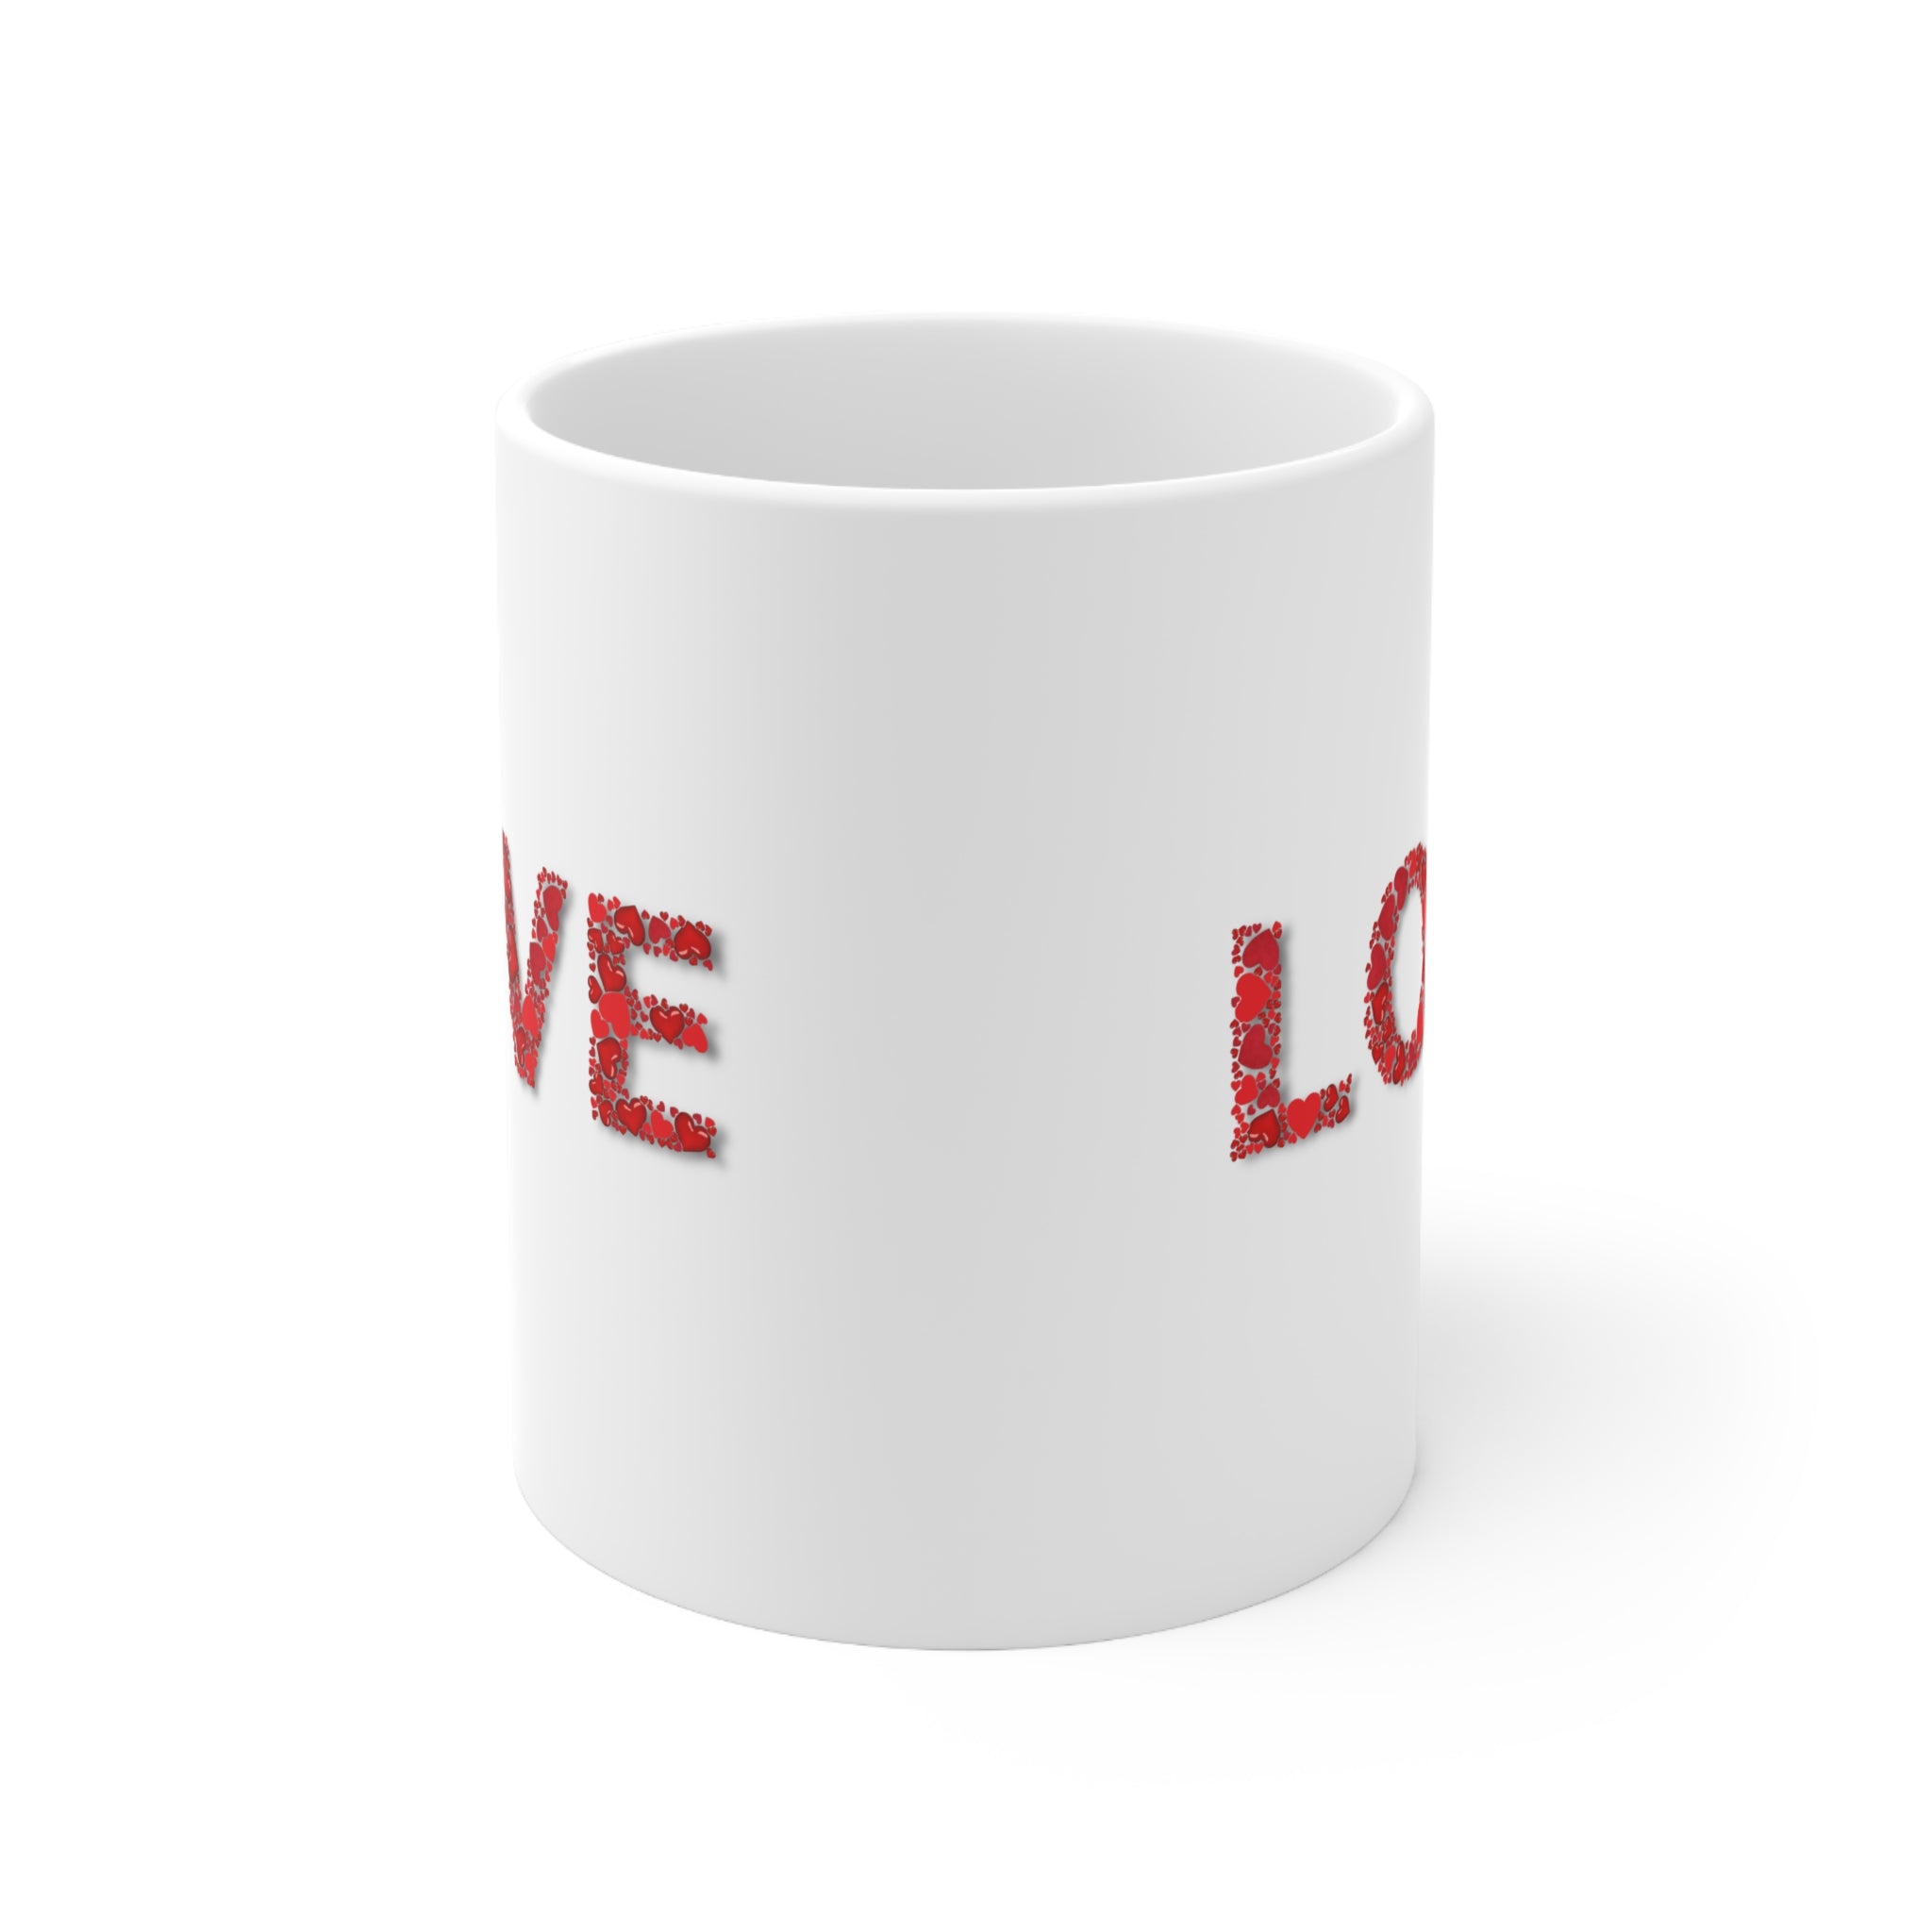 LOVE Ceramic Mug 11oz